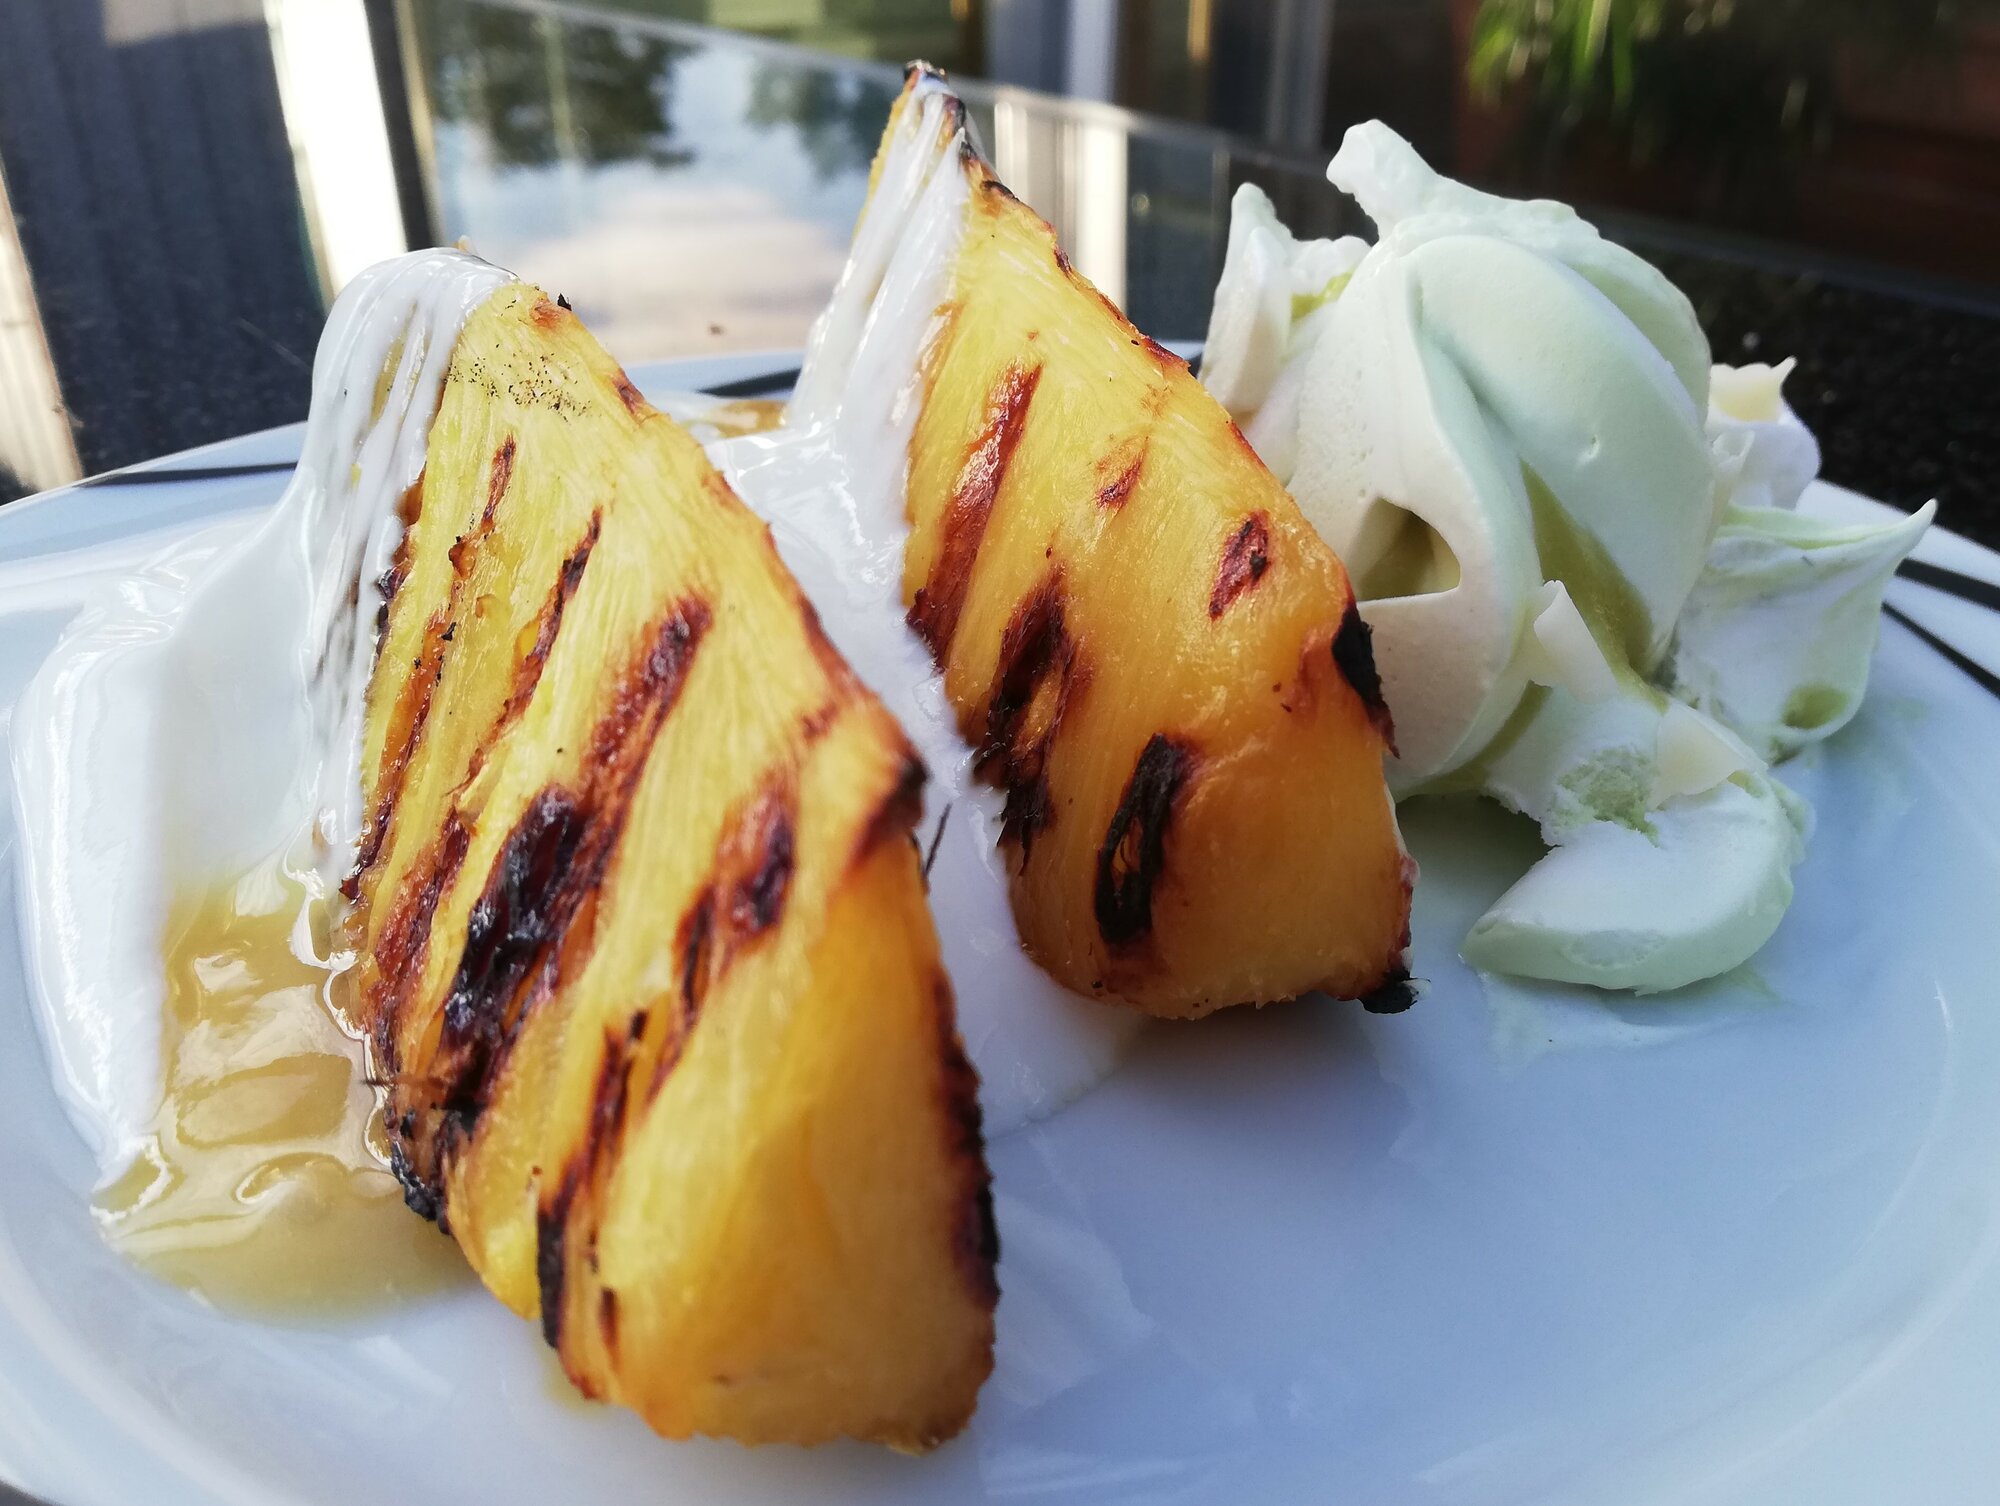 Dessert - Ananas mit Honig-Joghurt und Pistazie | Grillforum und BBQ ...